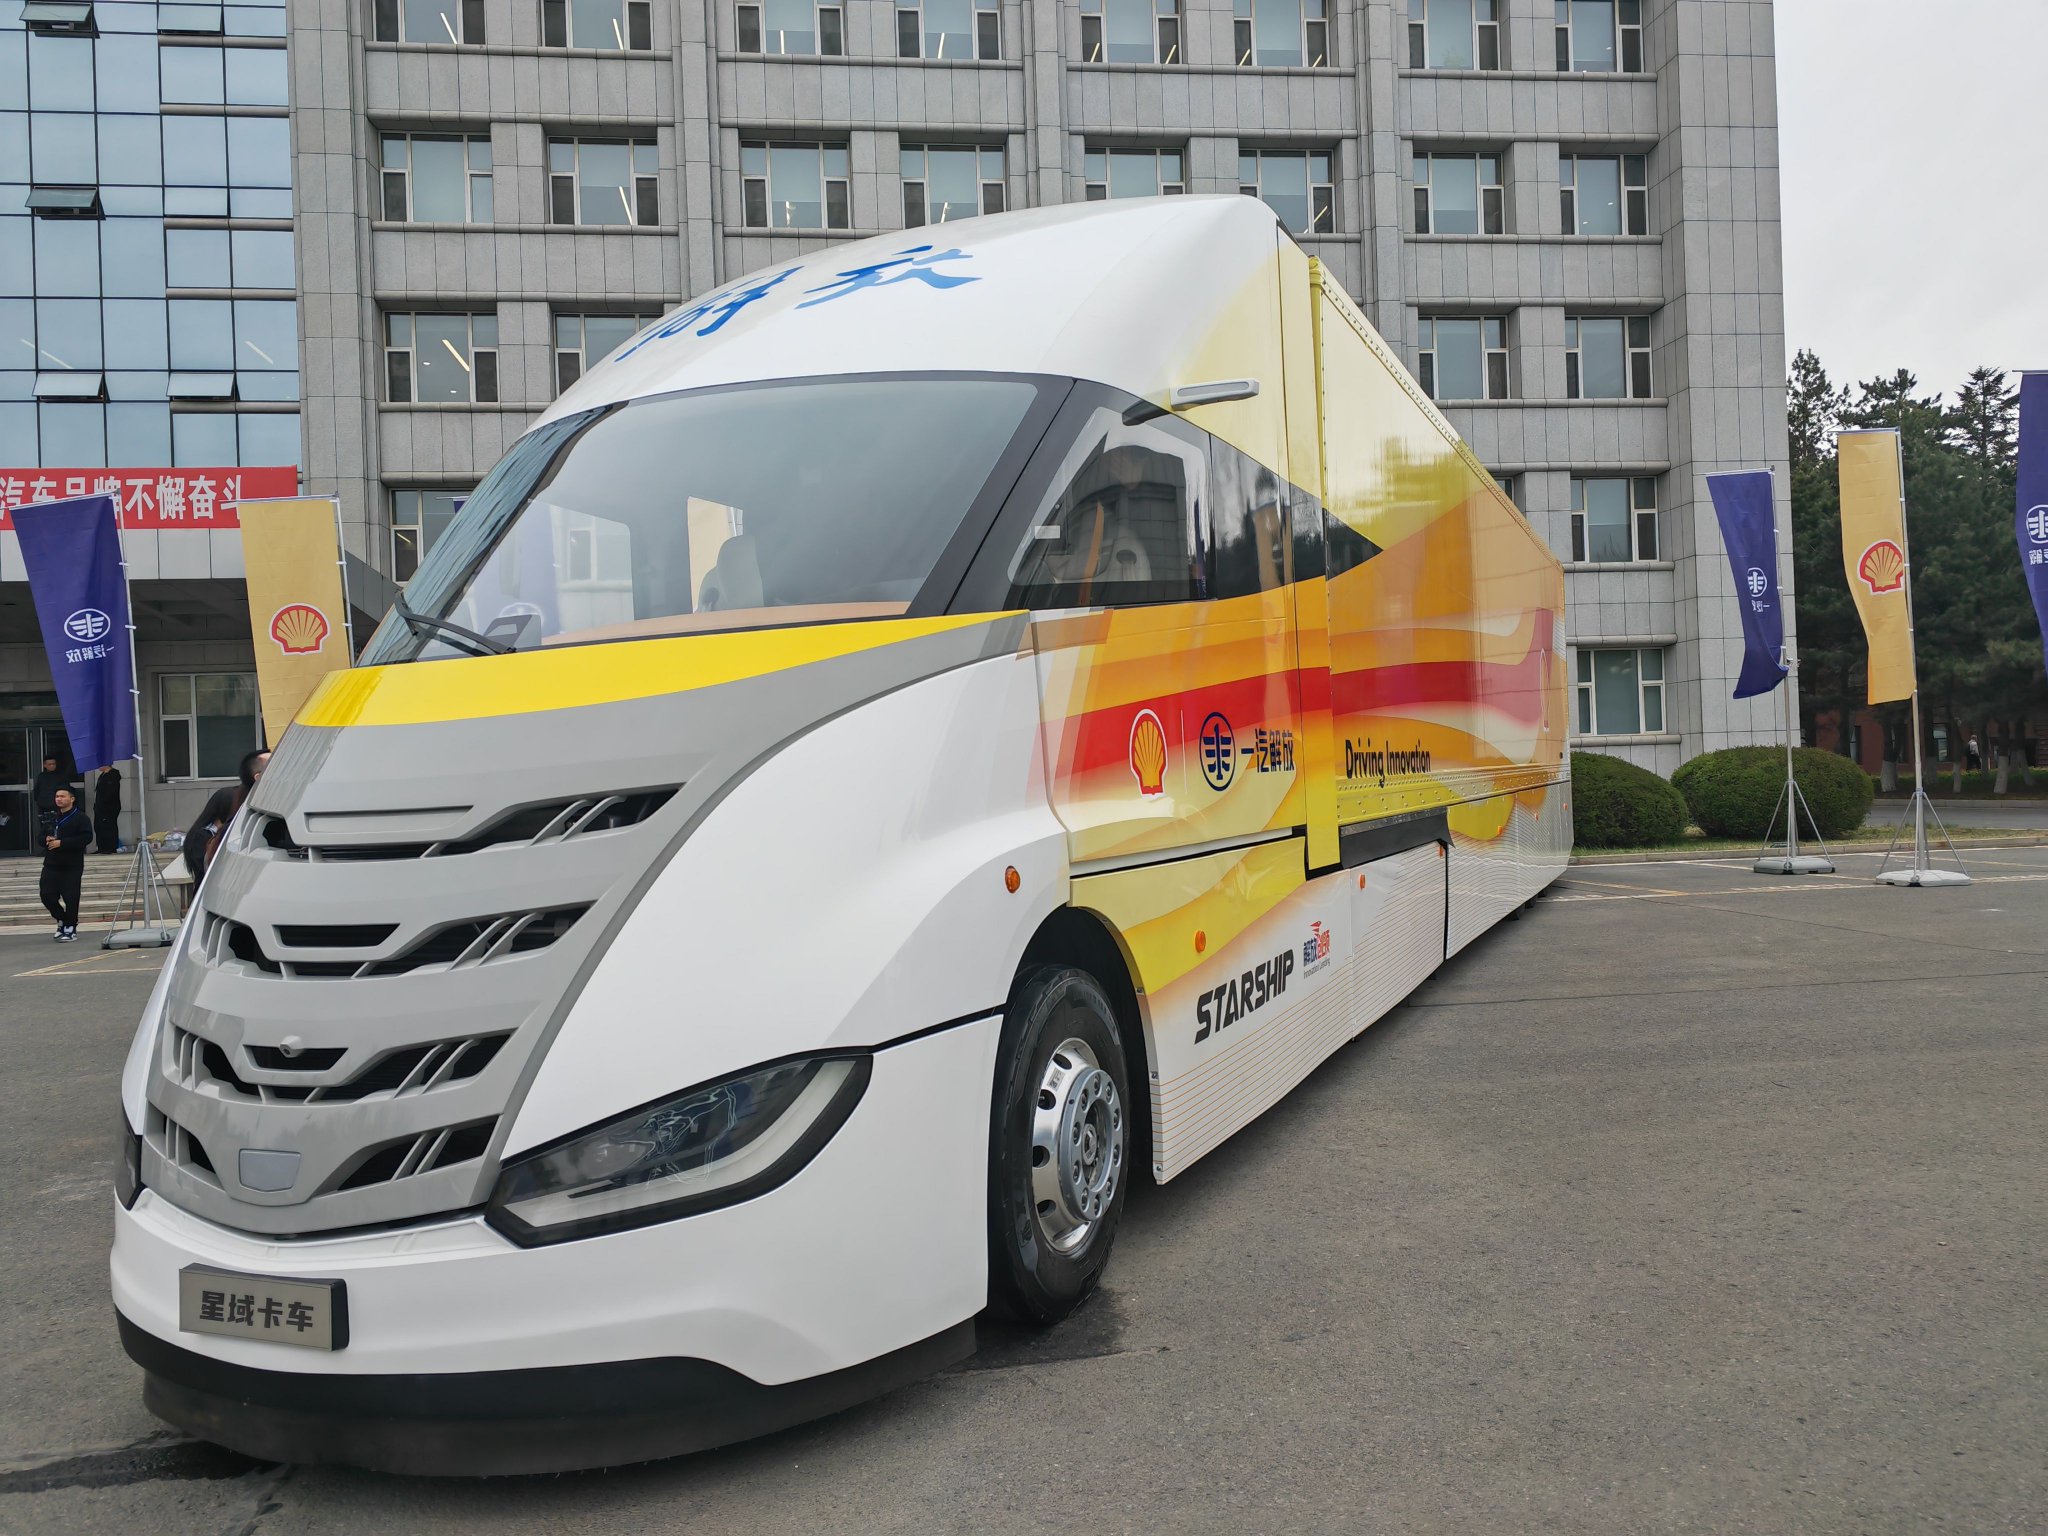 图为28日拍摄的中国和英国企业联合研发的一款新型概念卡车——“星域”概念卡车。新华社记者张建摄